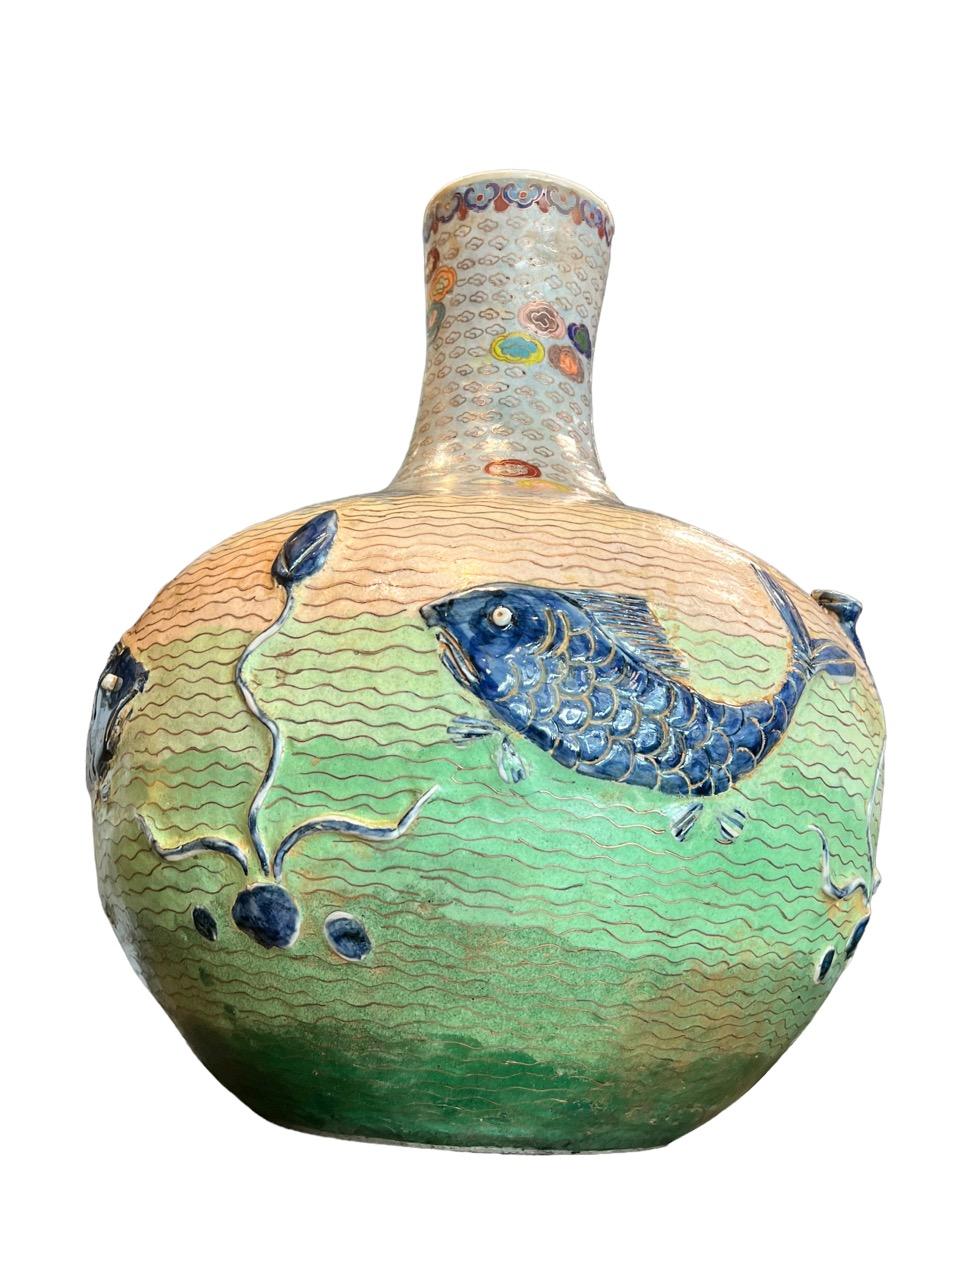 Émail Paire de vases en porcelaine émaillée cloisonnée datant du début du 20e siècle (années 1900).